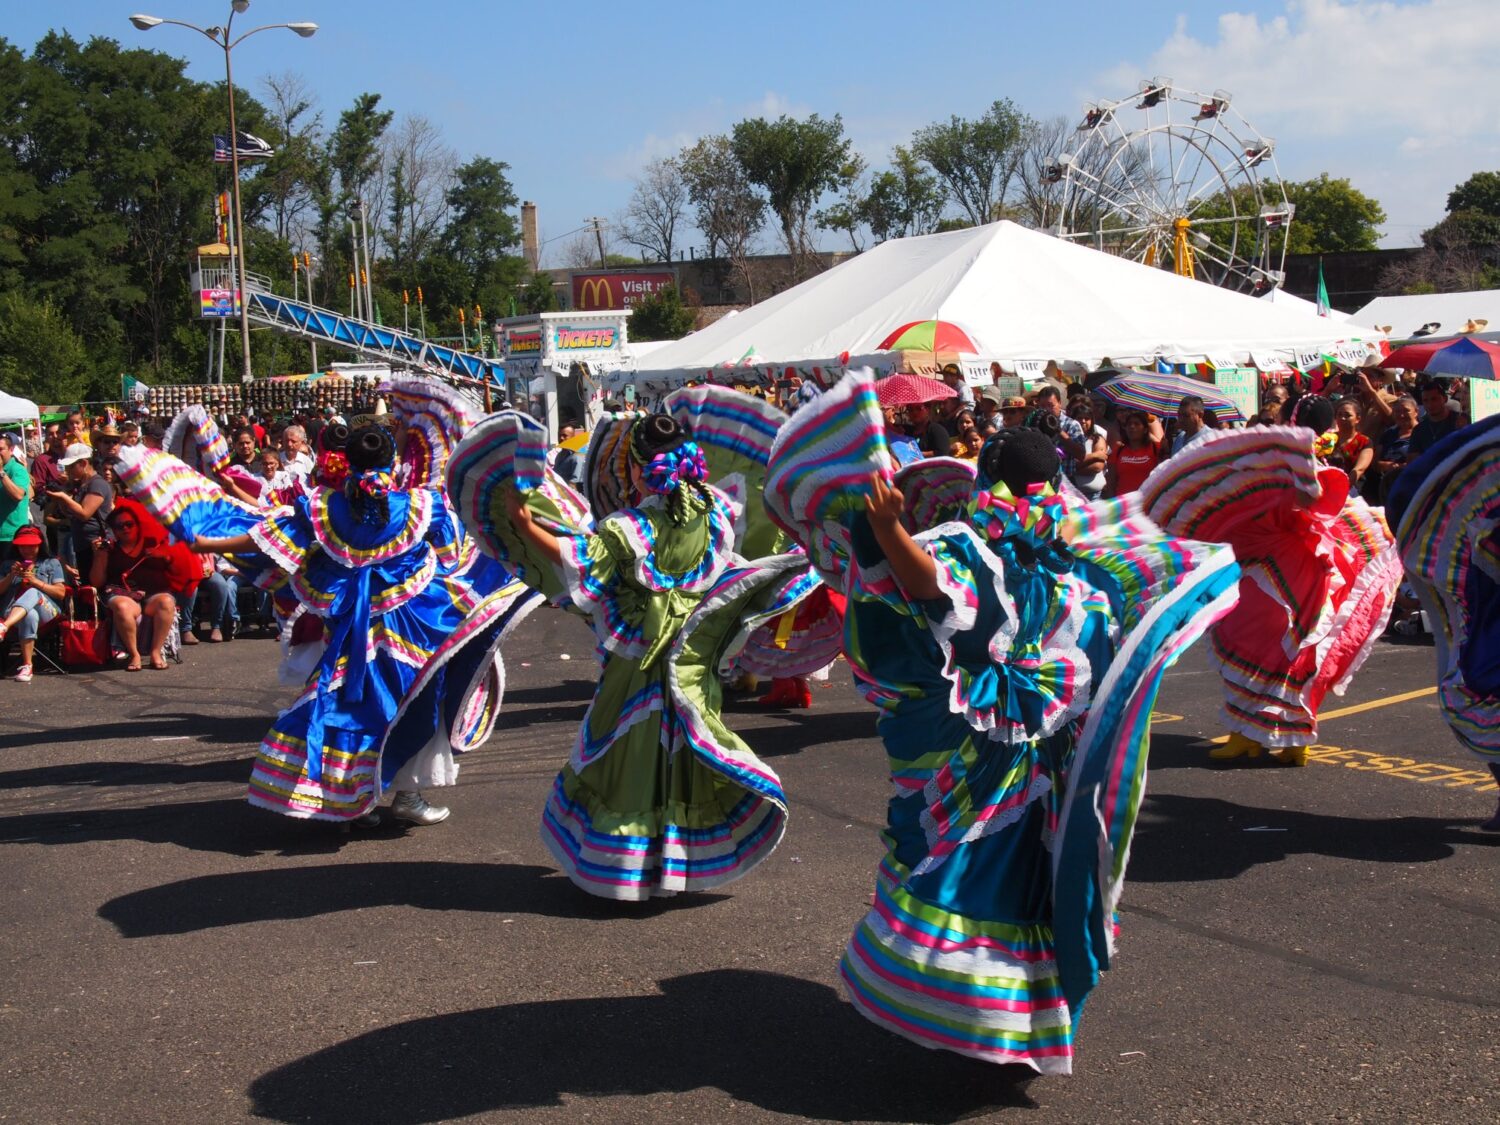 “Se recuerda la victoria de México”: Vuelve el Desfile del Día de la Independencia de México de la UMOS